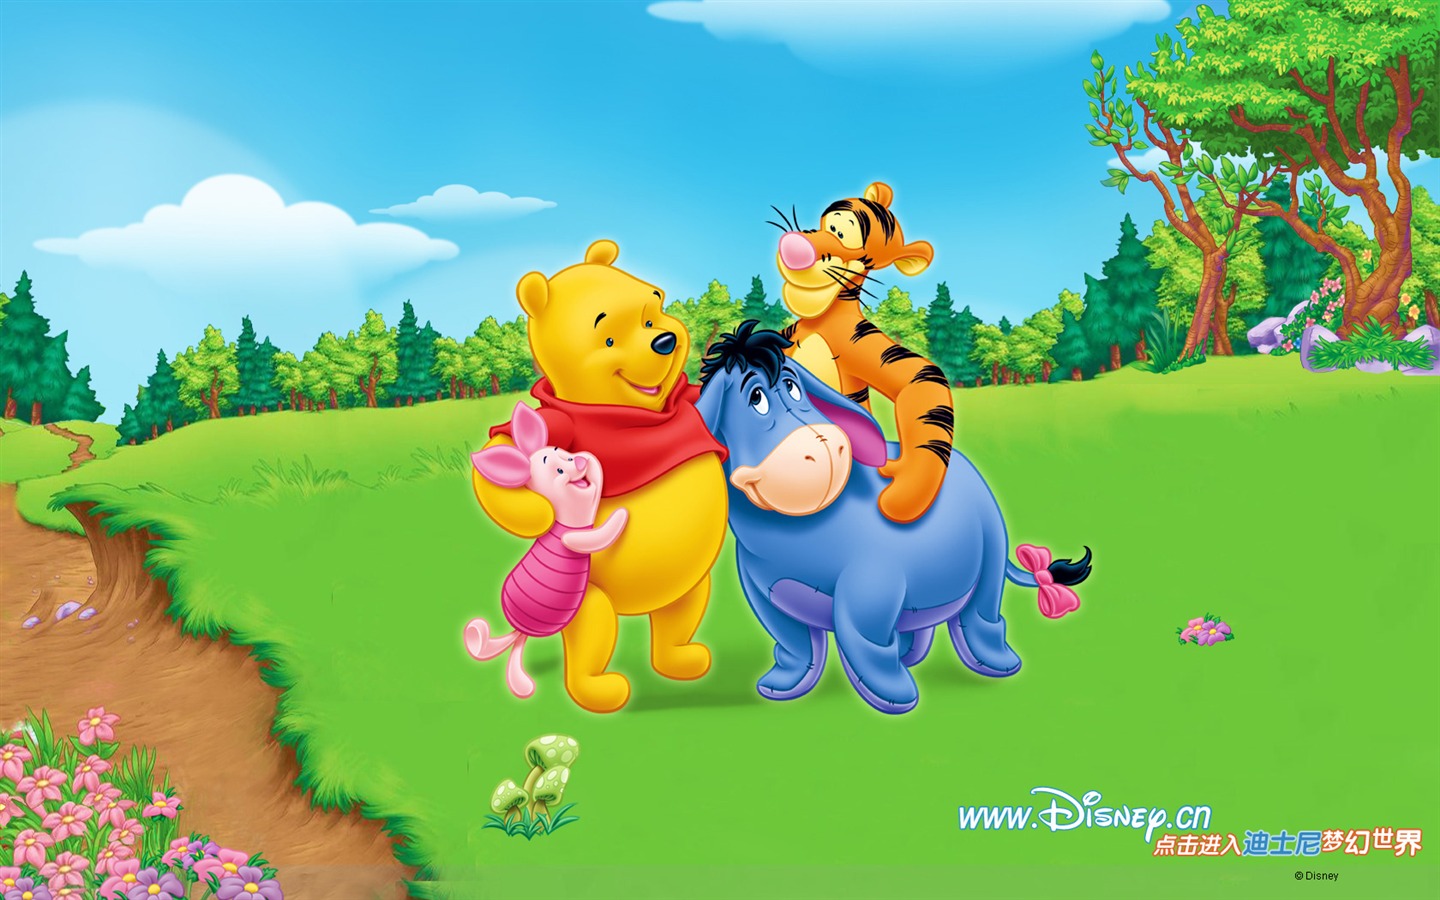 Walt Disney cartoon Winnie the Pooh wallpaper (1) #14 - 1440x900